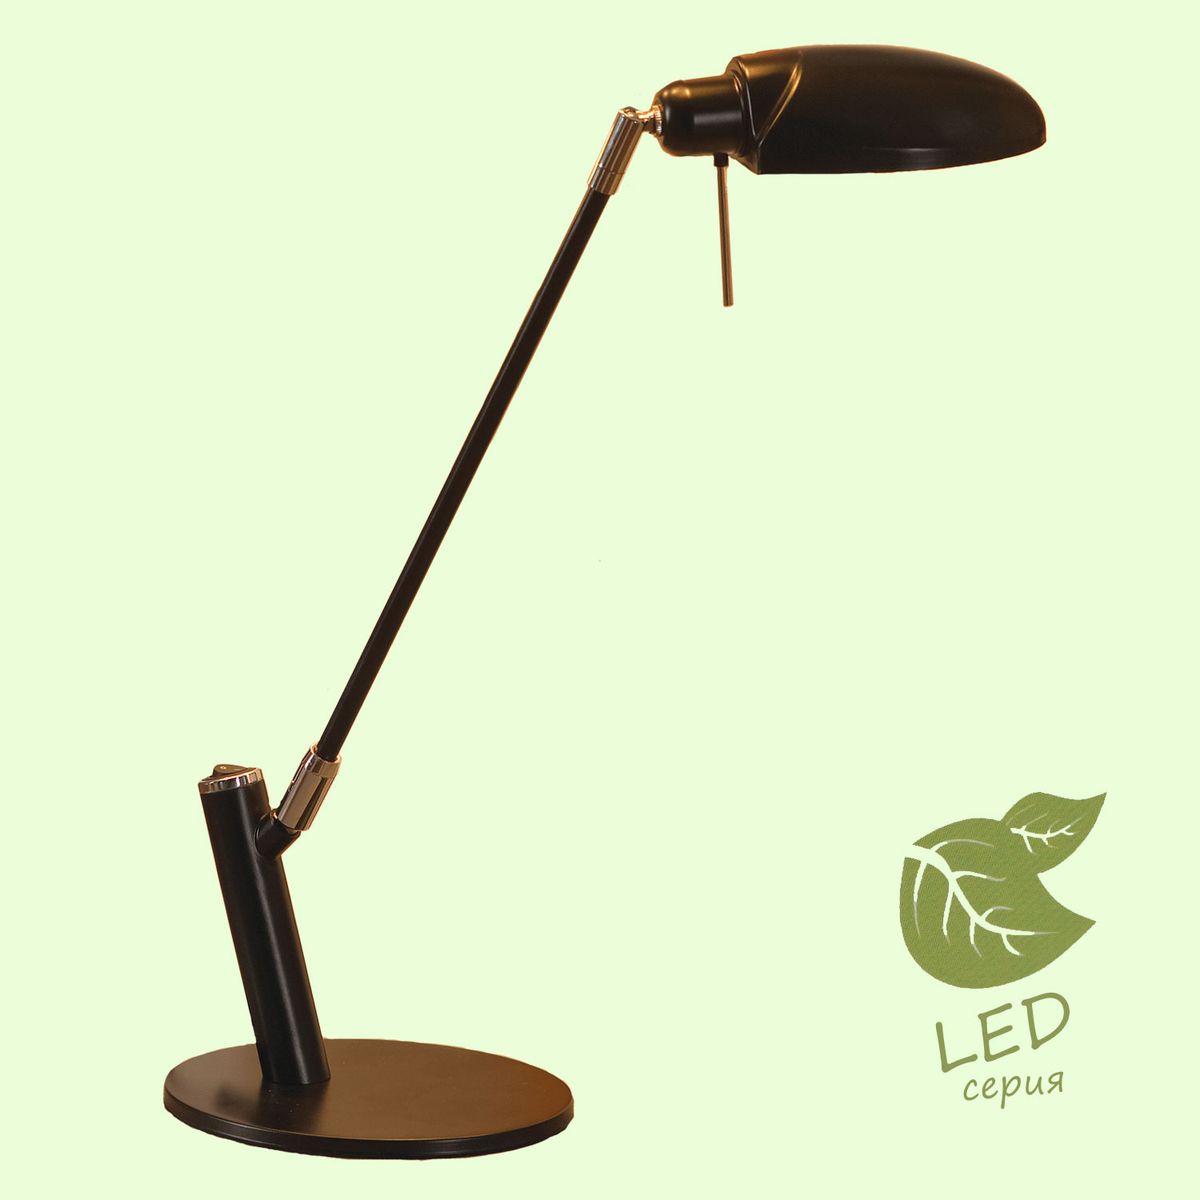 Настольная лампа Lussole GRLST-4314-01